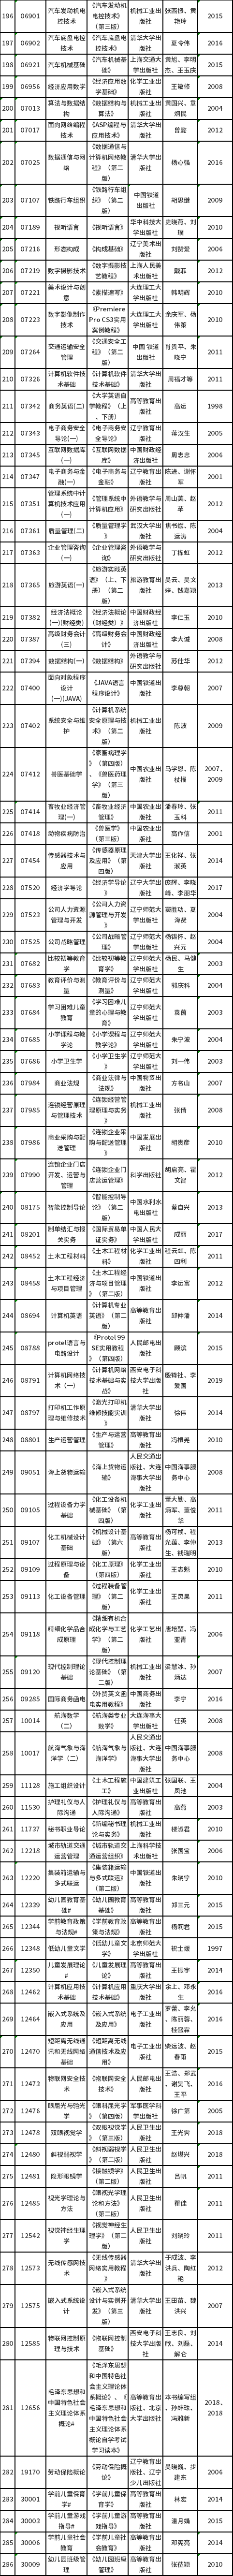 辽宁省2022年下半年自考理论课考试教材信息表